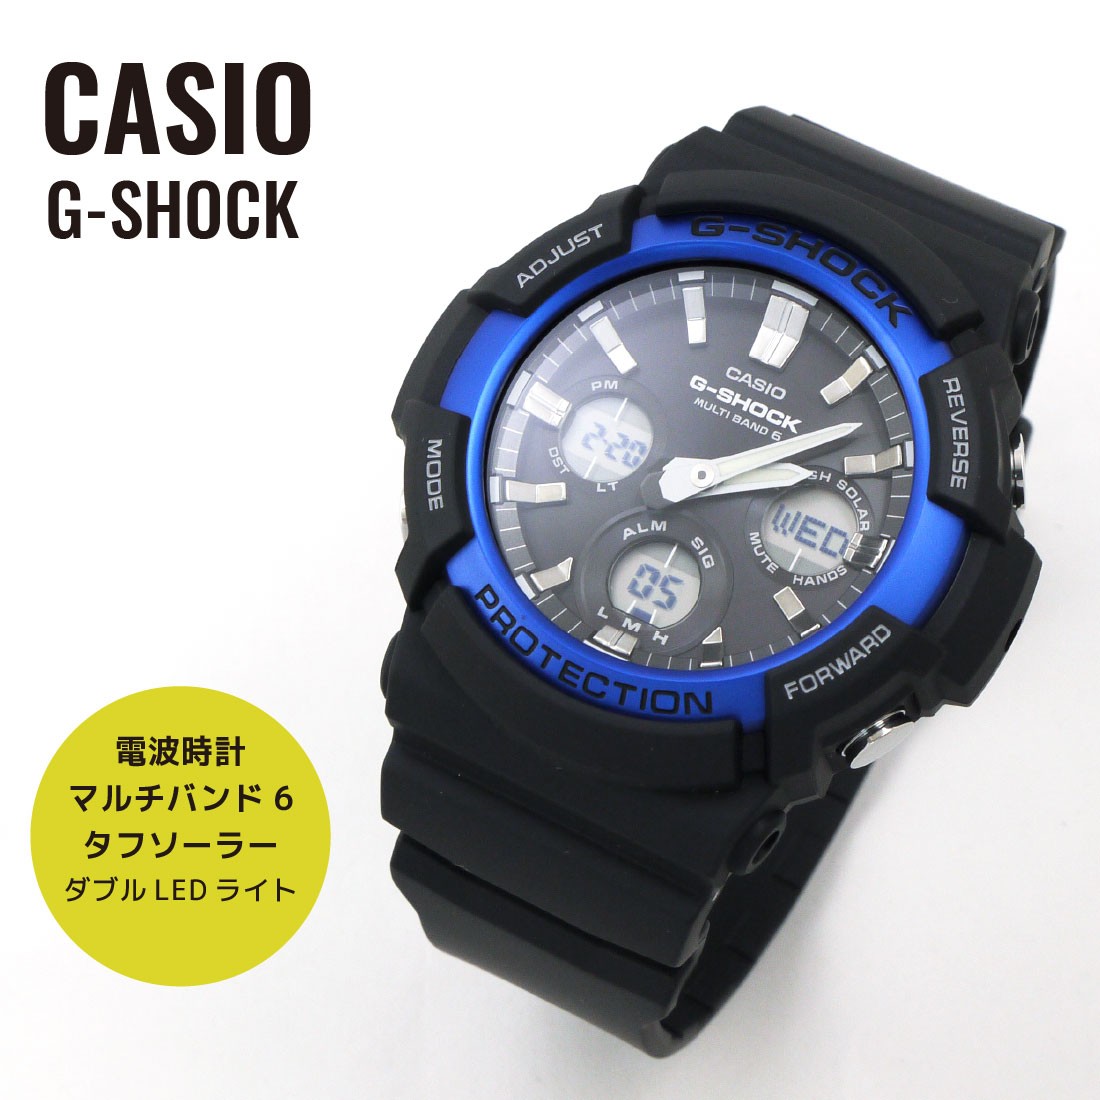 CASIO カシオ G-SHOCK Gショック ジーショック 電波 タフソーラー GAW 